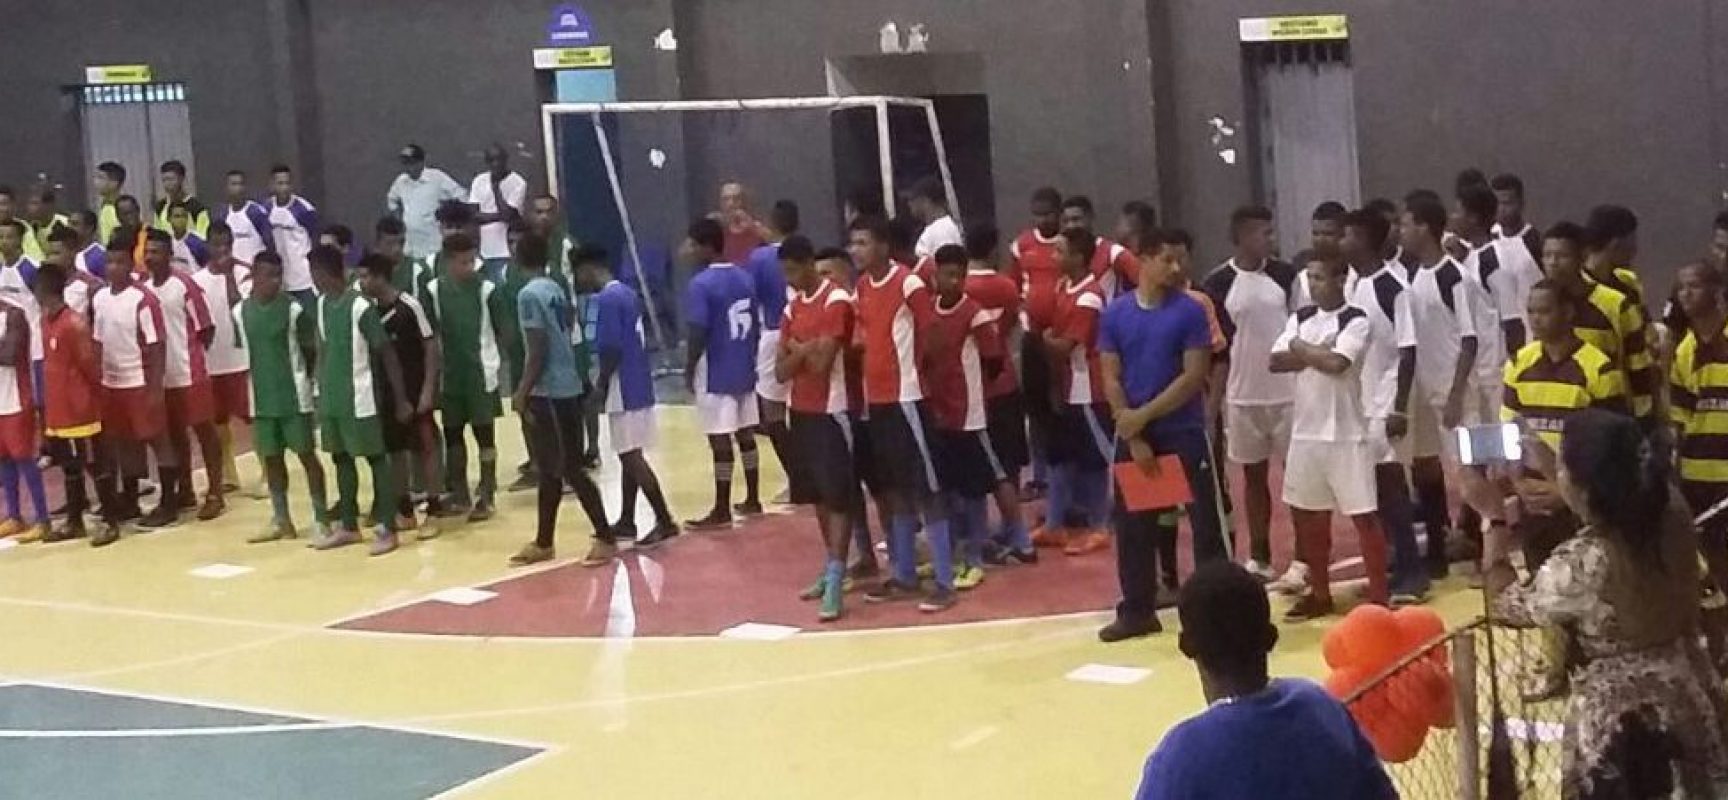 Final dos jogos pré-desportivos de Futsal reuniu cerca de 500 alunos